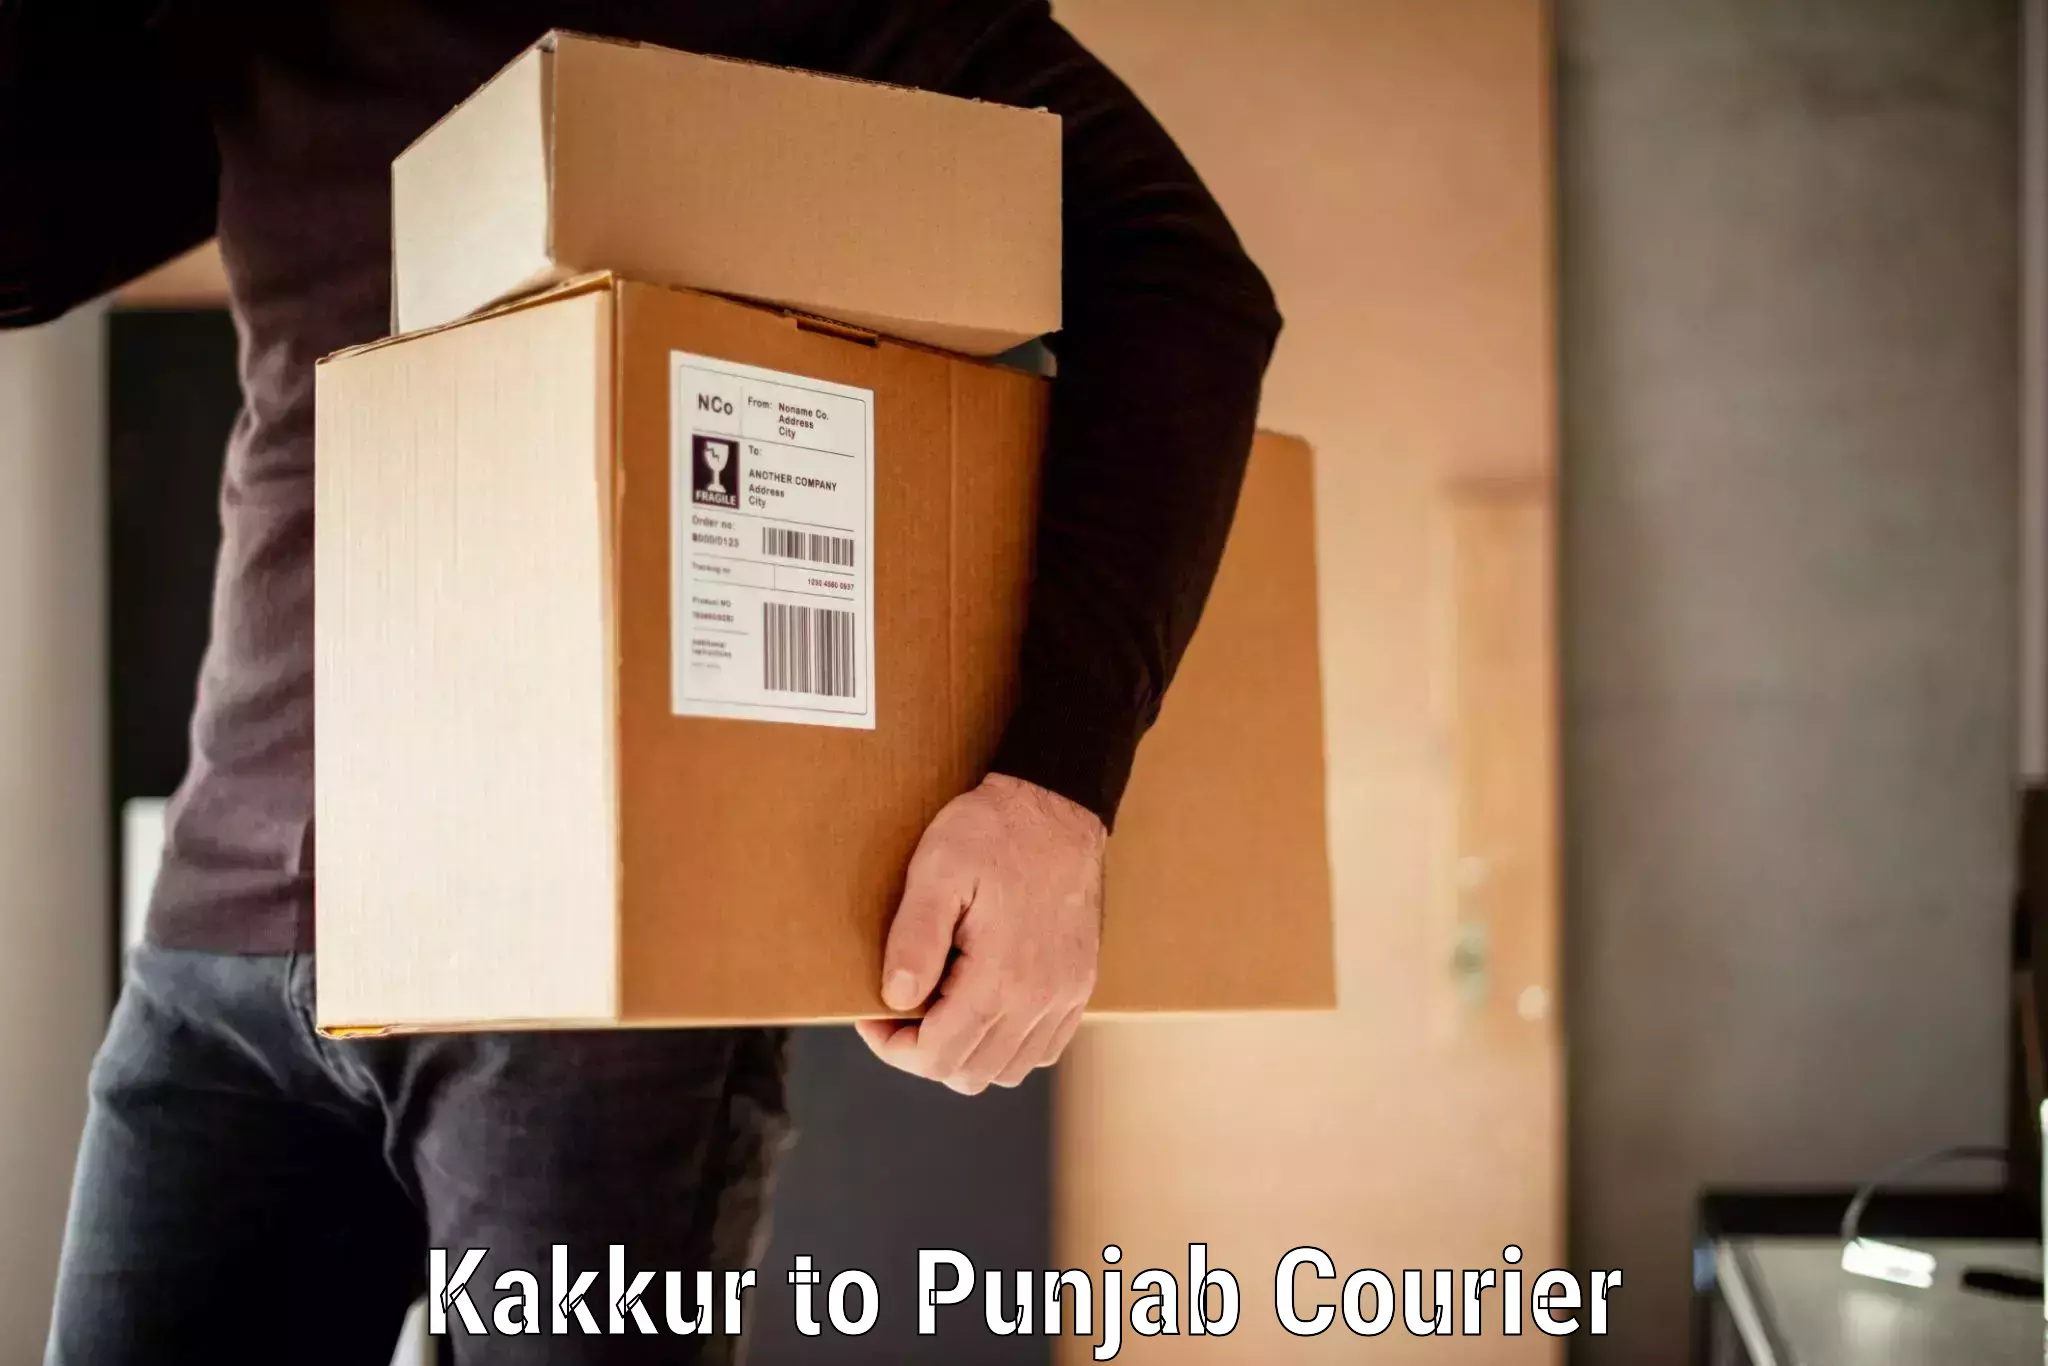 Baggage transport logistics Kakkur to Punjab